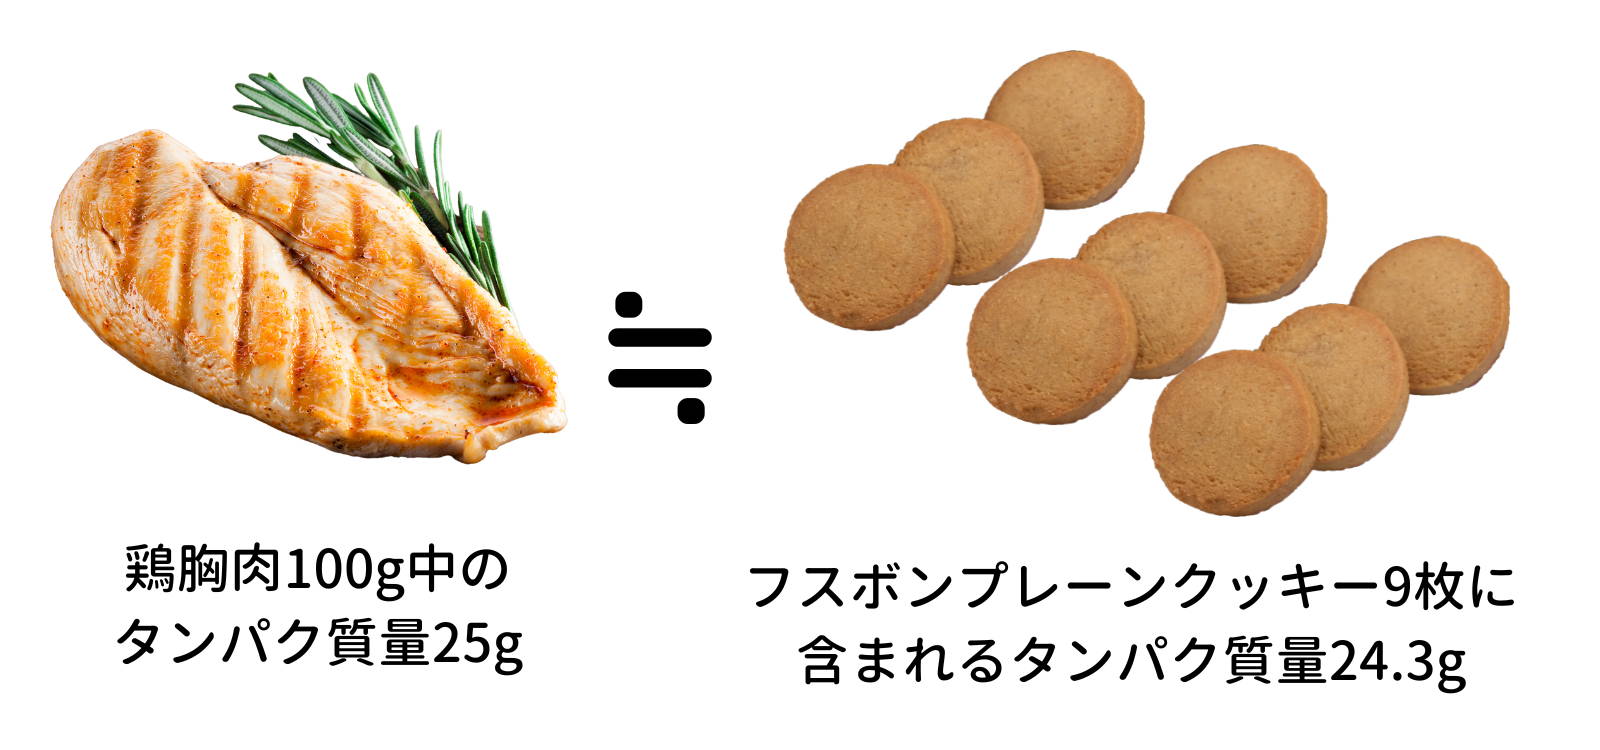 フスボンプレーンクッキーに含まれるタンパク質量を鶏胸肉と比較